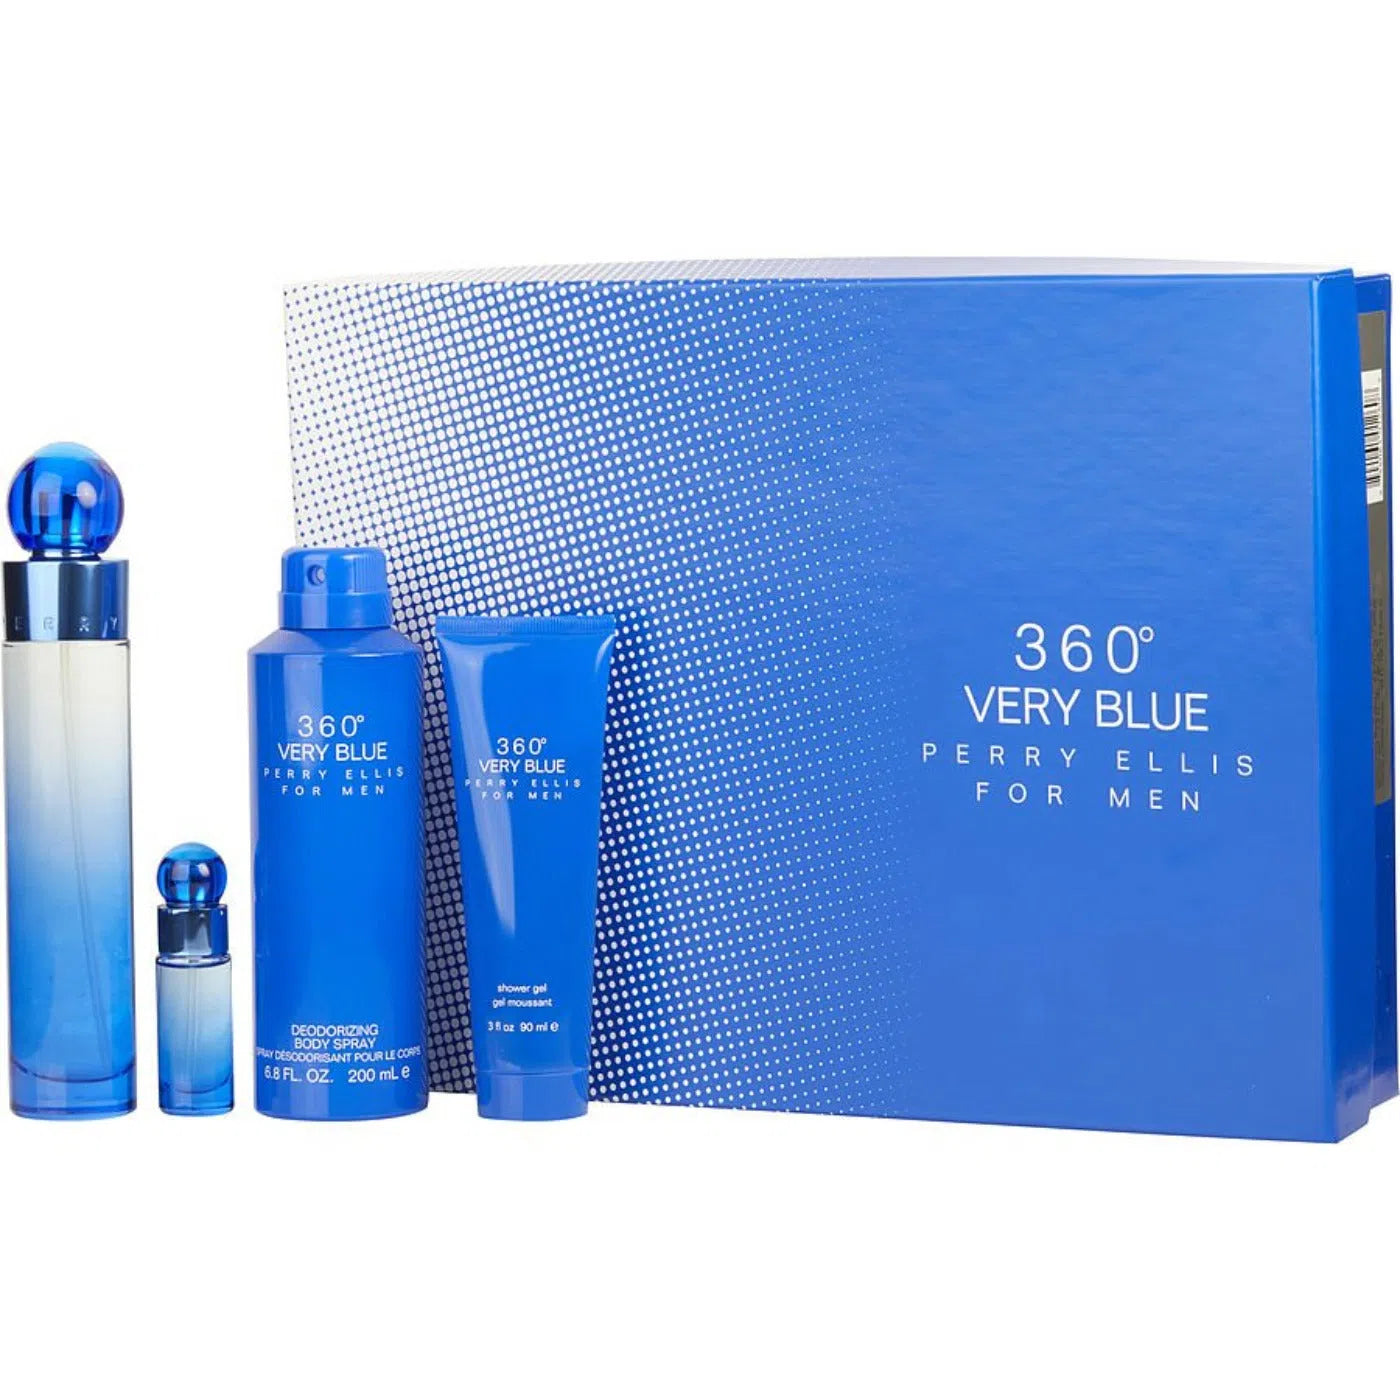 Estuche Perry Ellis 360 Very Blue EDT (M) / 4 Pc SP 100 ml; BS 200 ml; SG 90 ml; SP 7.5 ml - 844061012608- Prive Perfumes Honduras